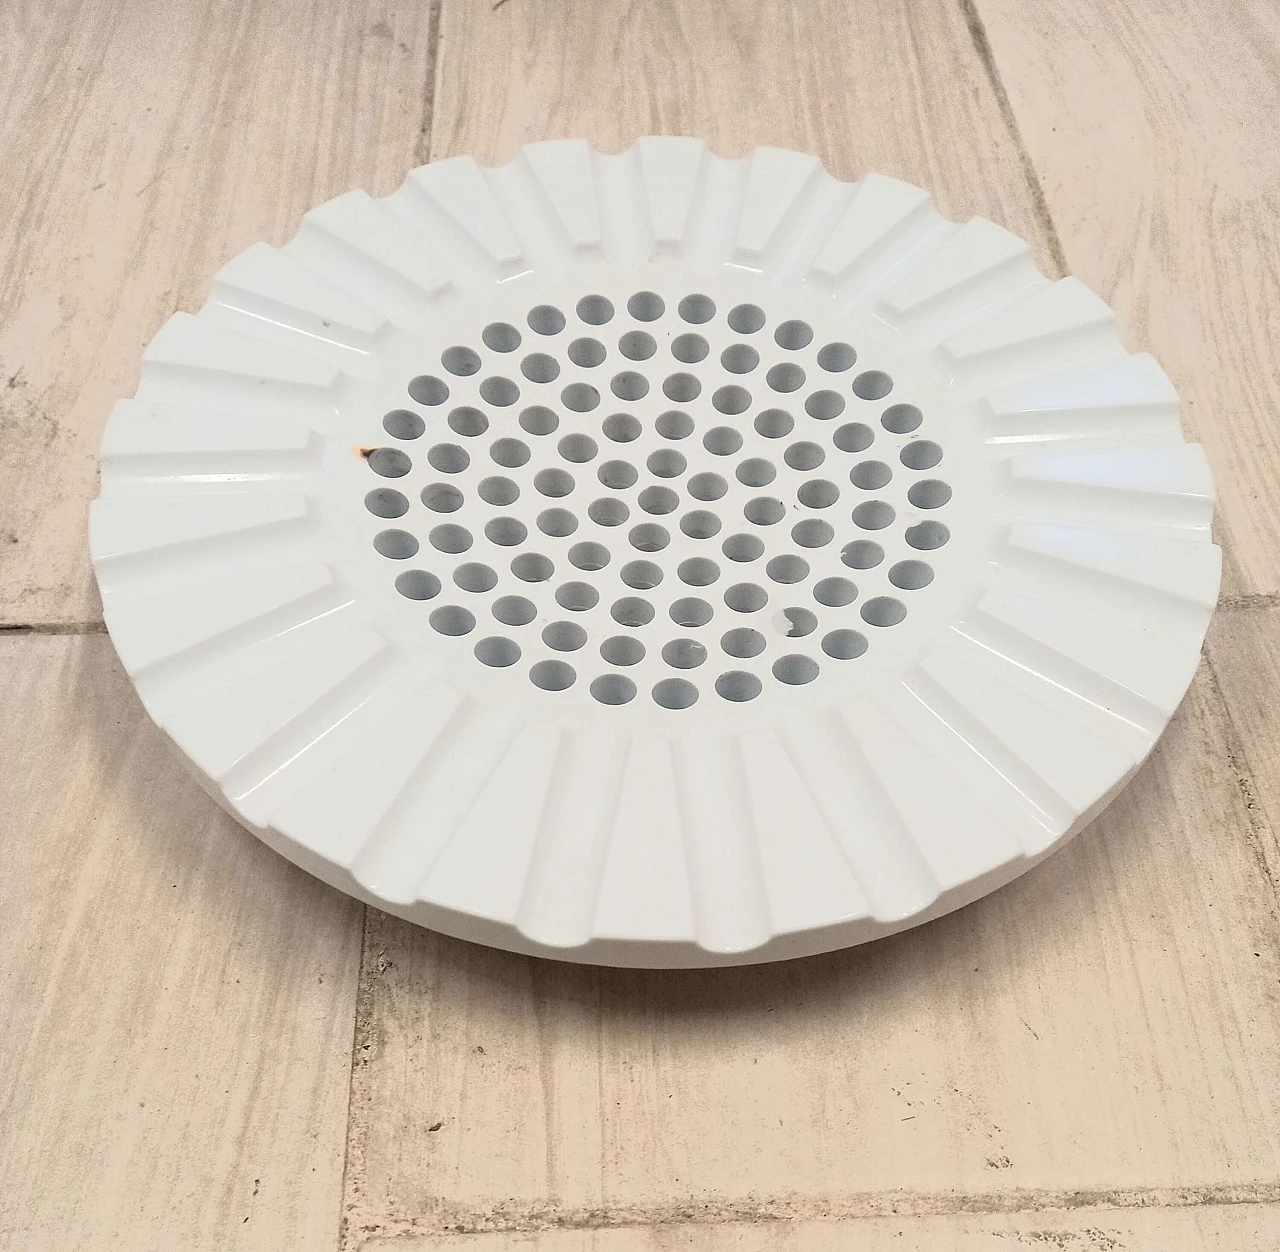 White 4638 ashtray by Anna Castelli Ferrieri for Kartell, 1970s 1